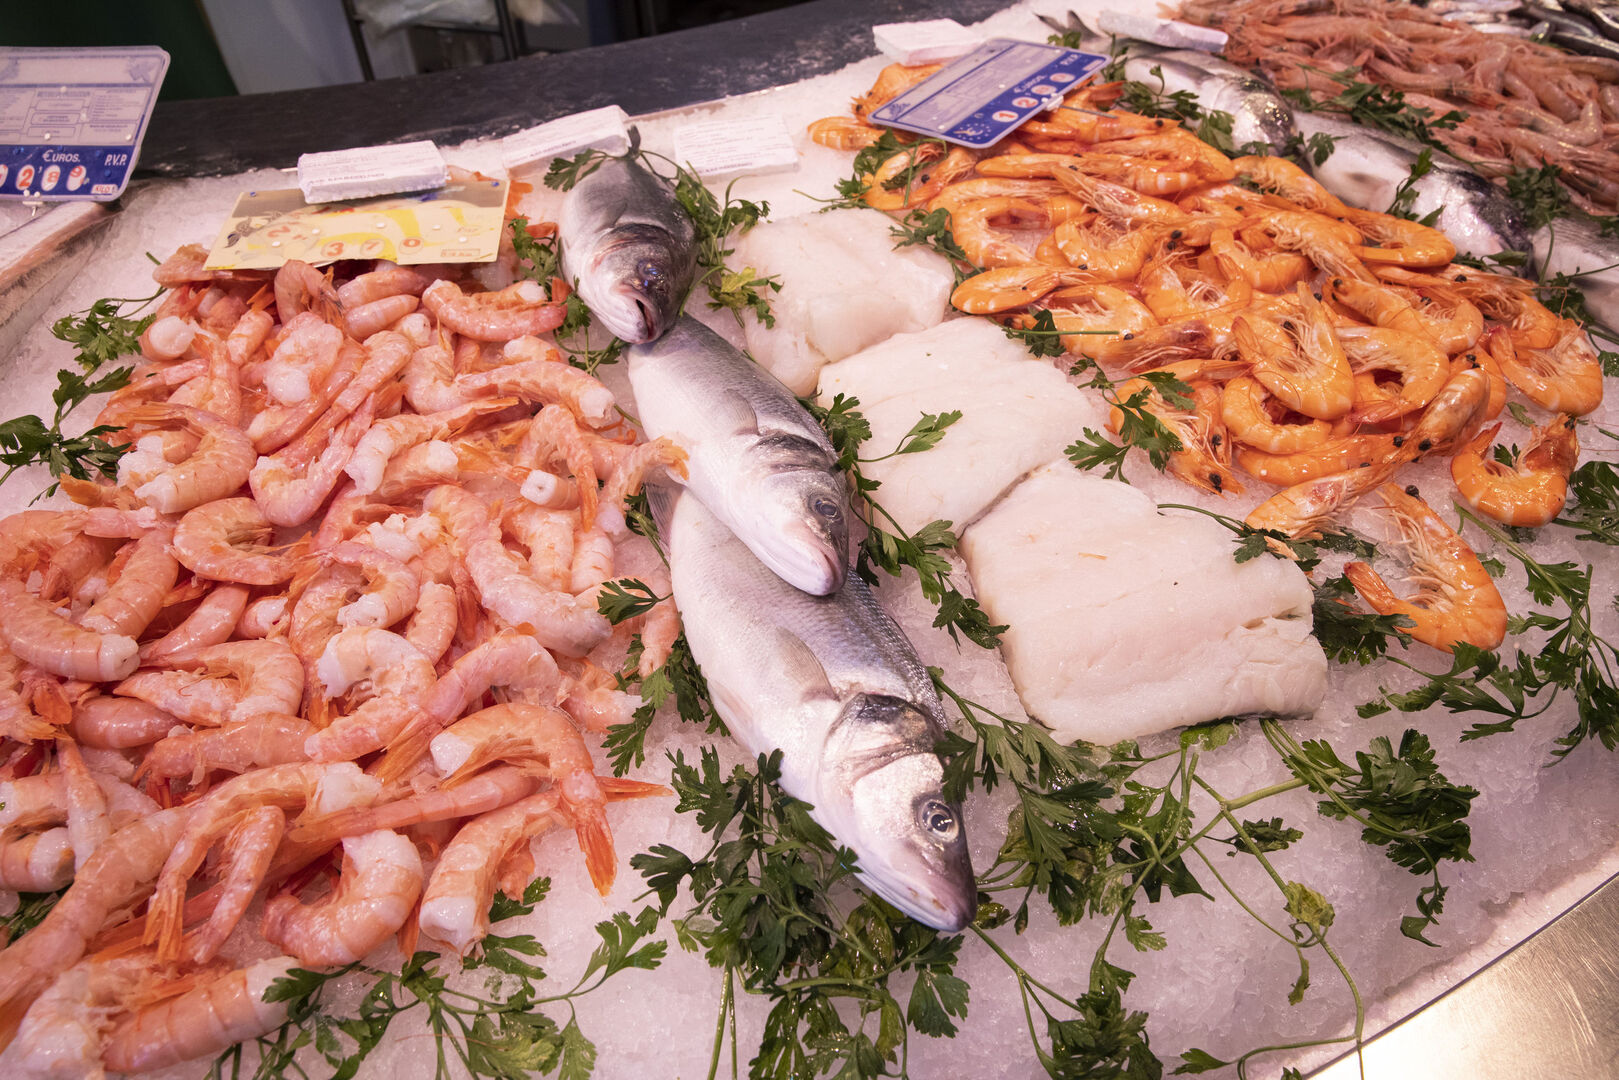 El lobby animalista va a por el pescado tras atacar el consumo de carne